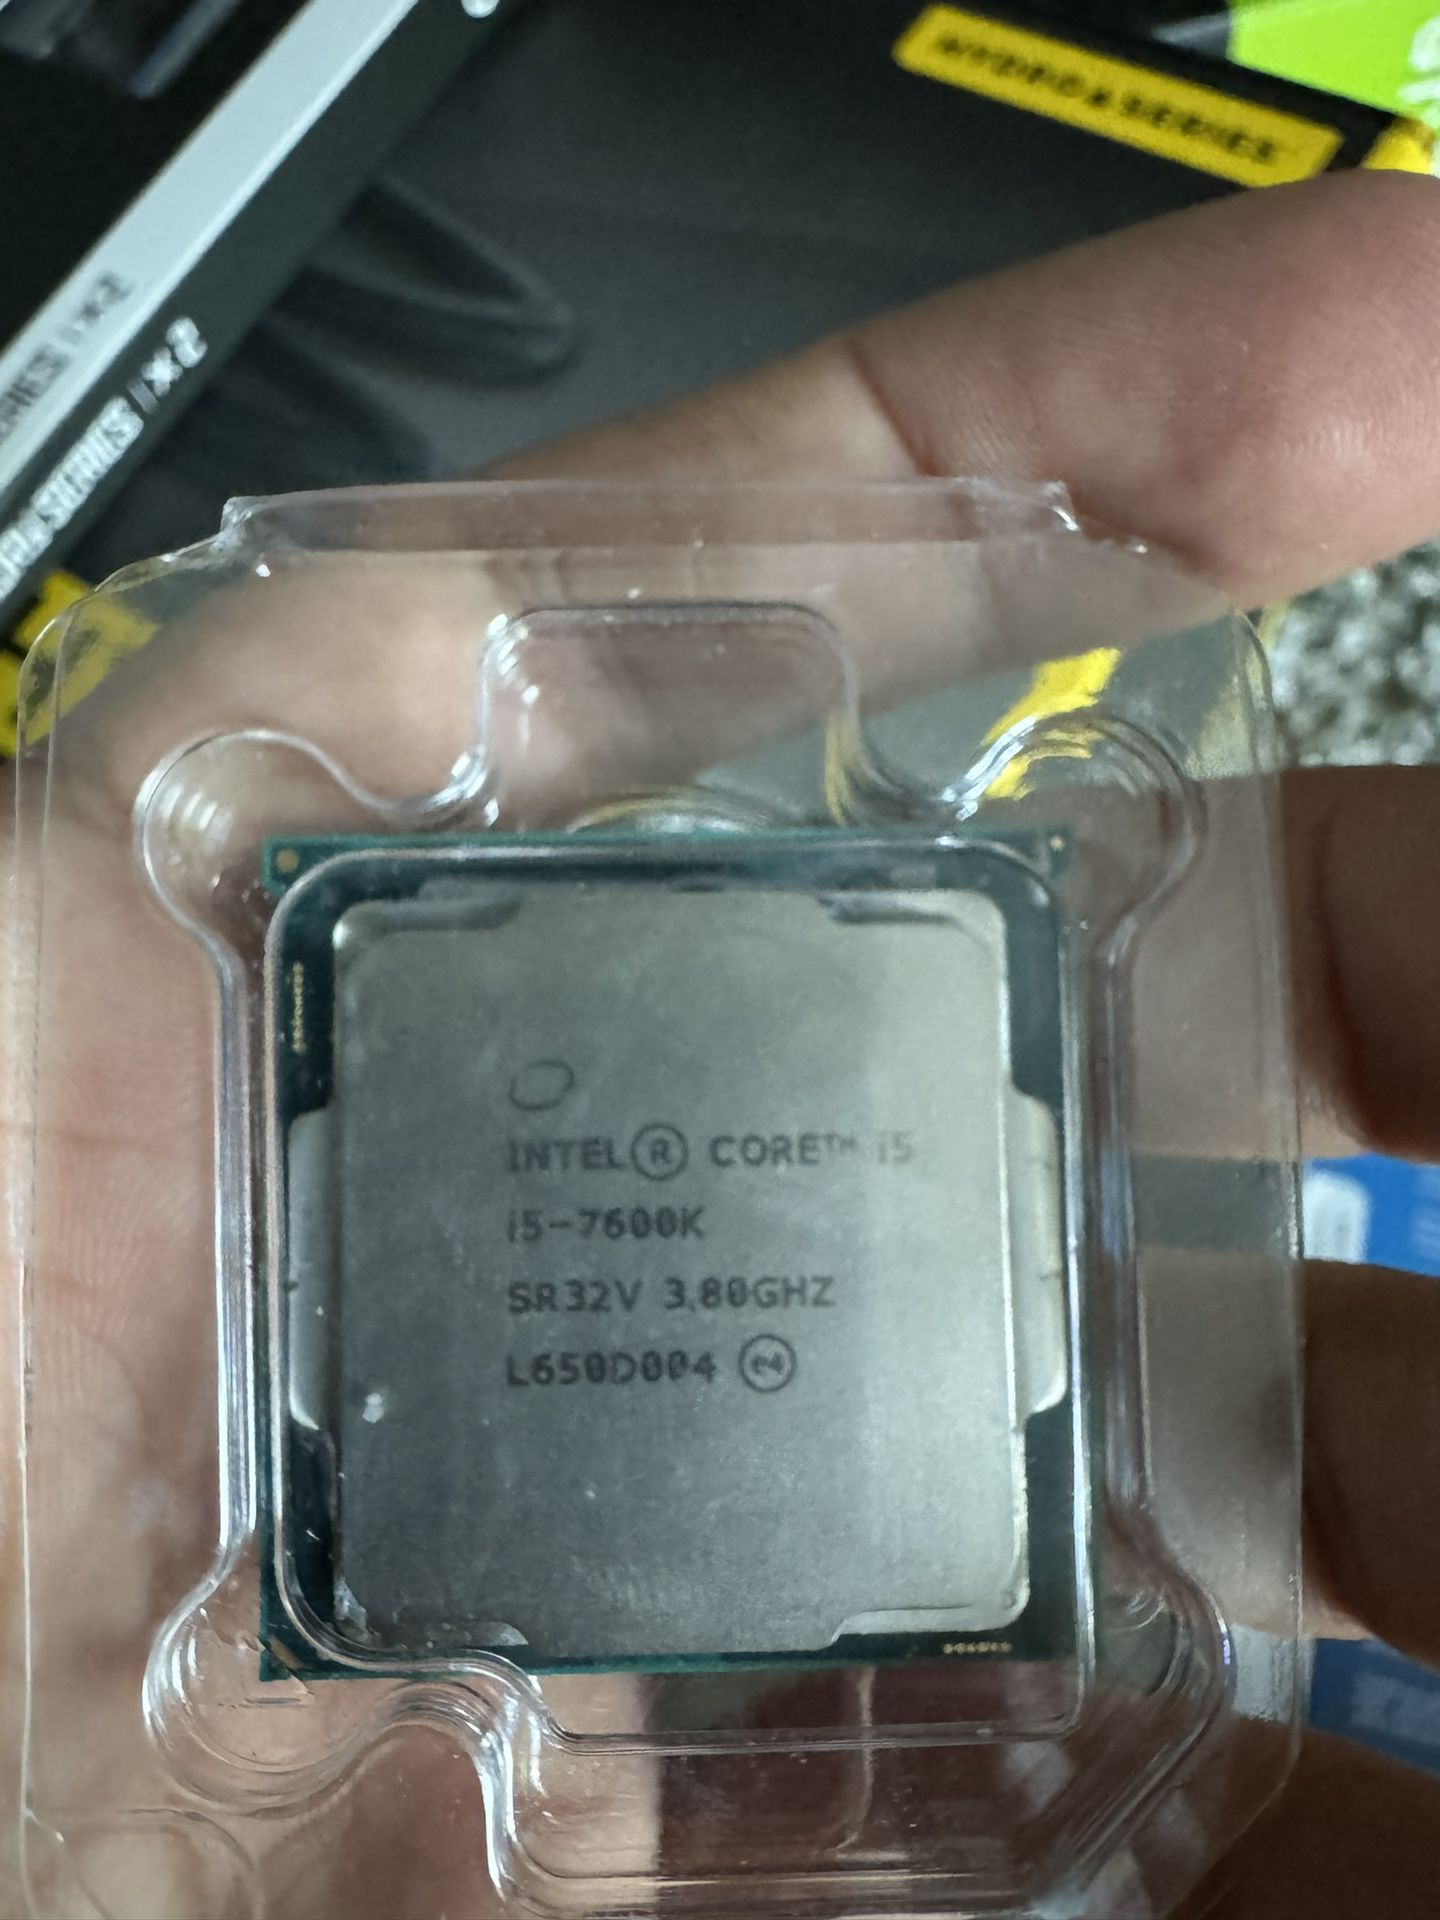 Intel Core i5 7600k CPU